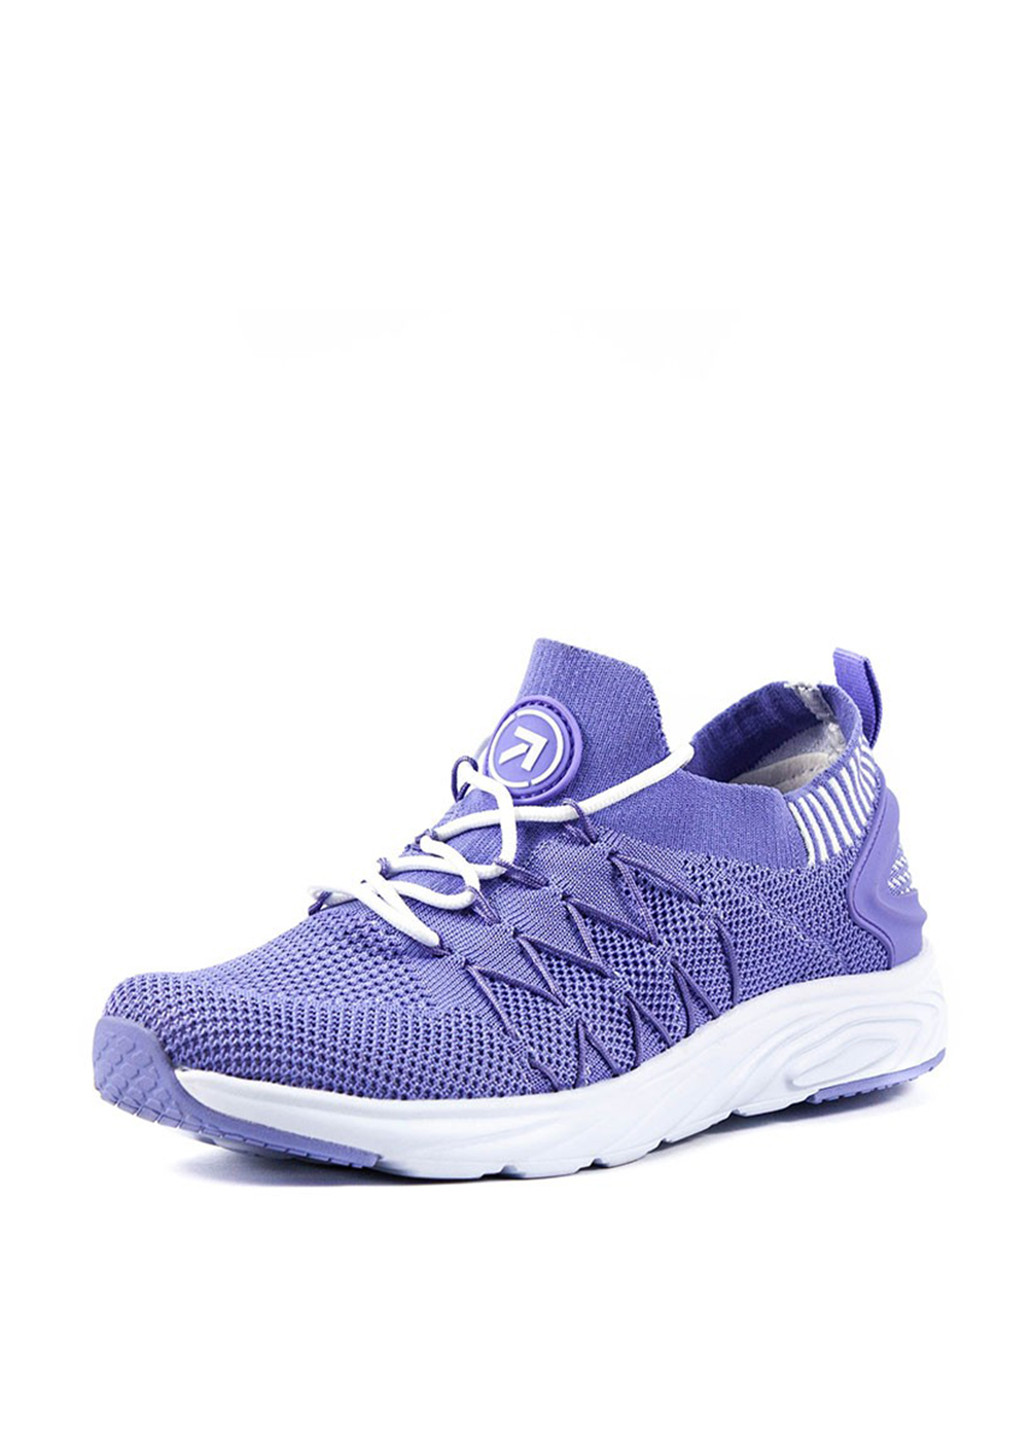 Фиолетовые демисезонные кроссовки Restime